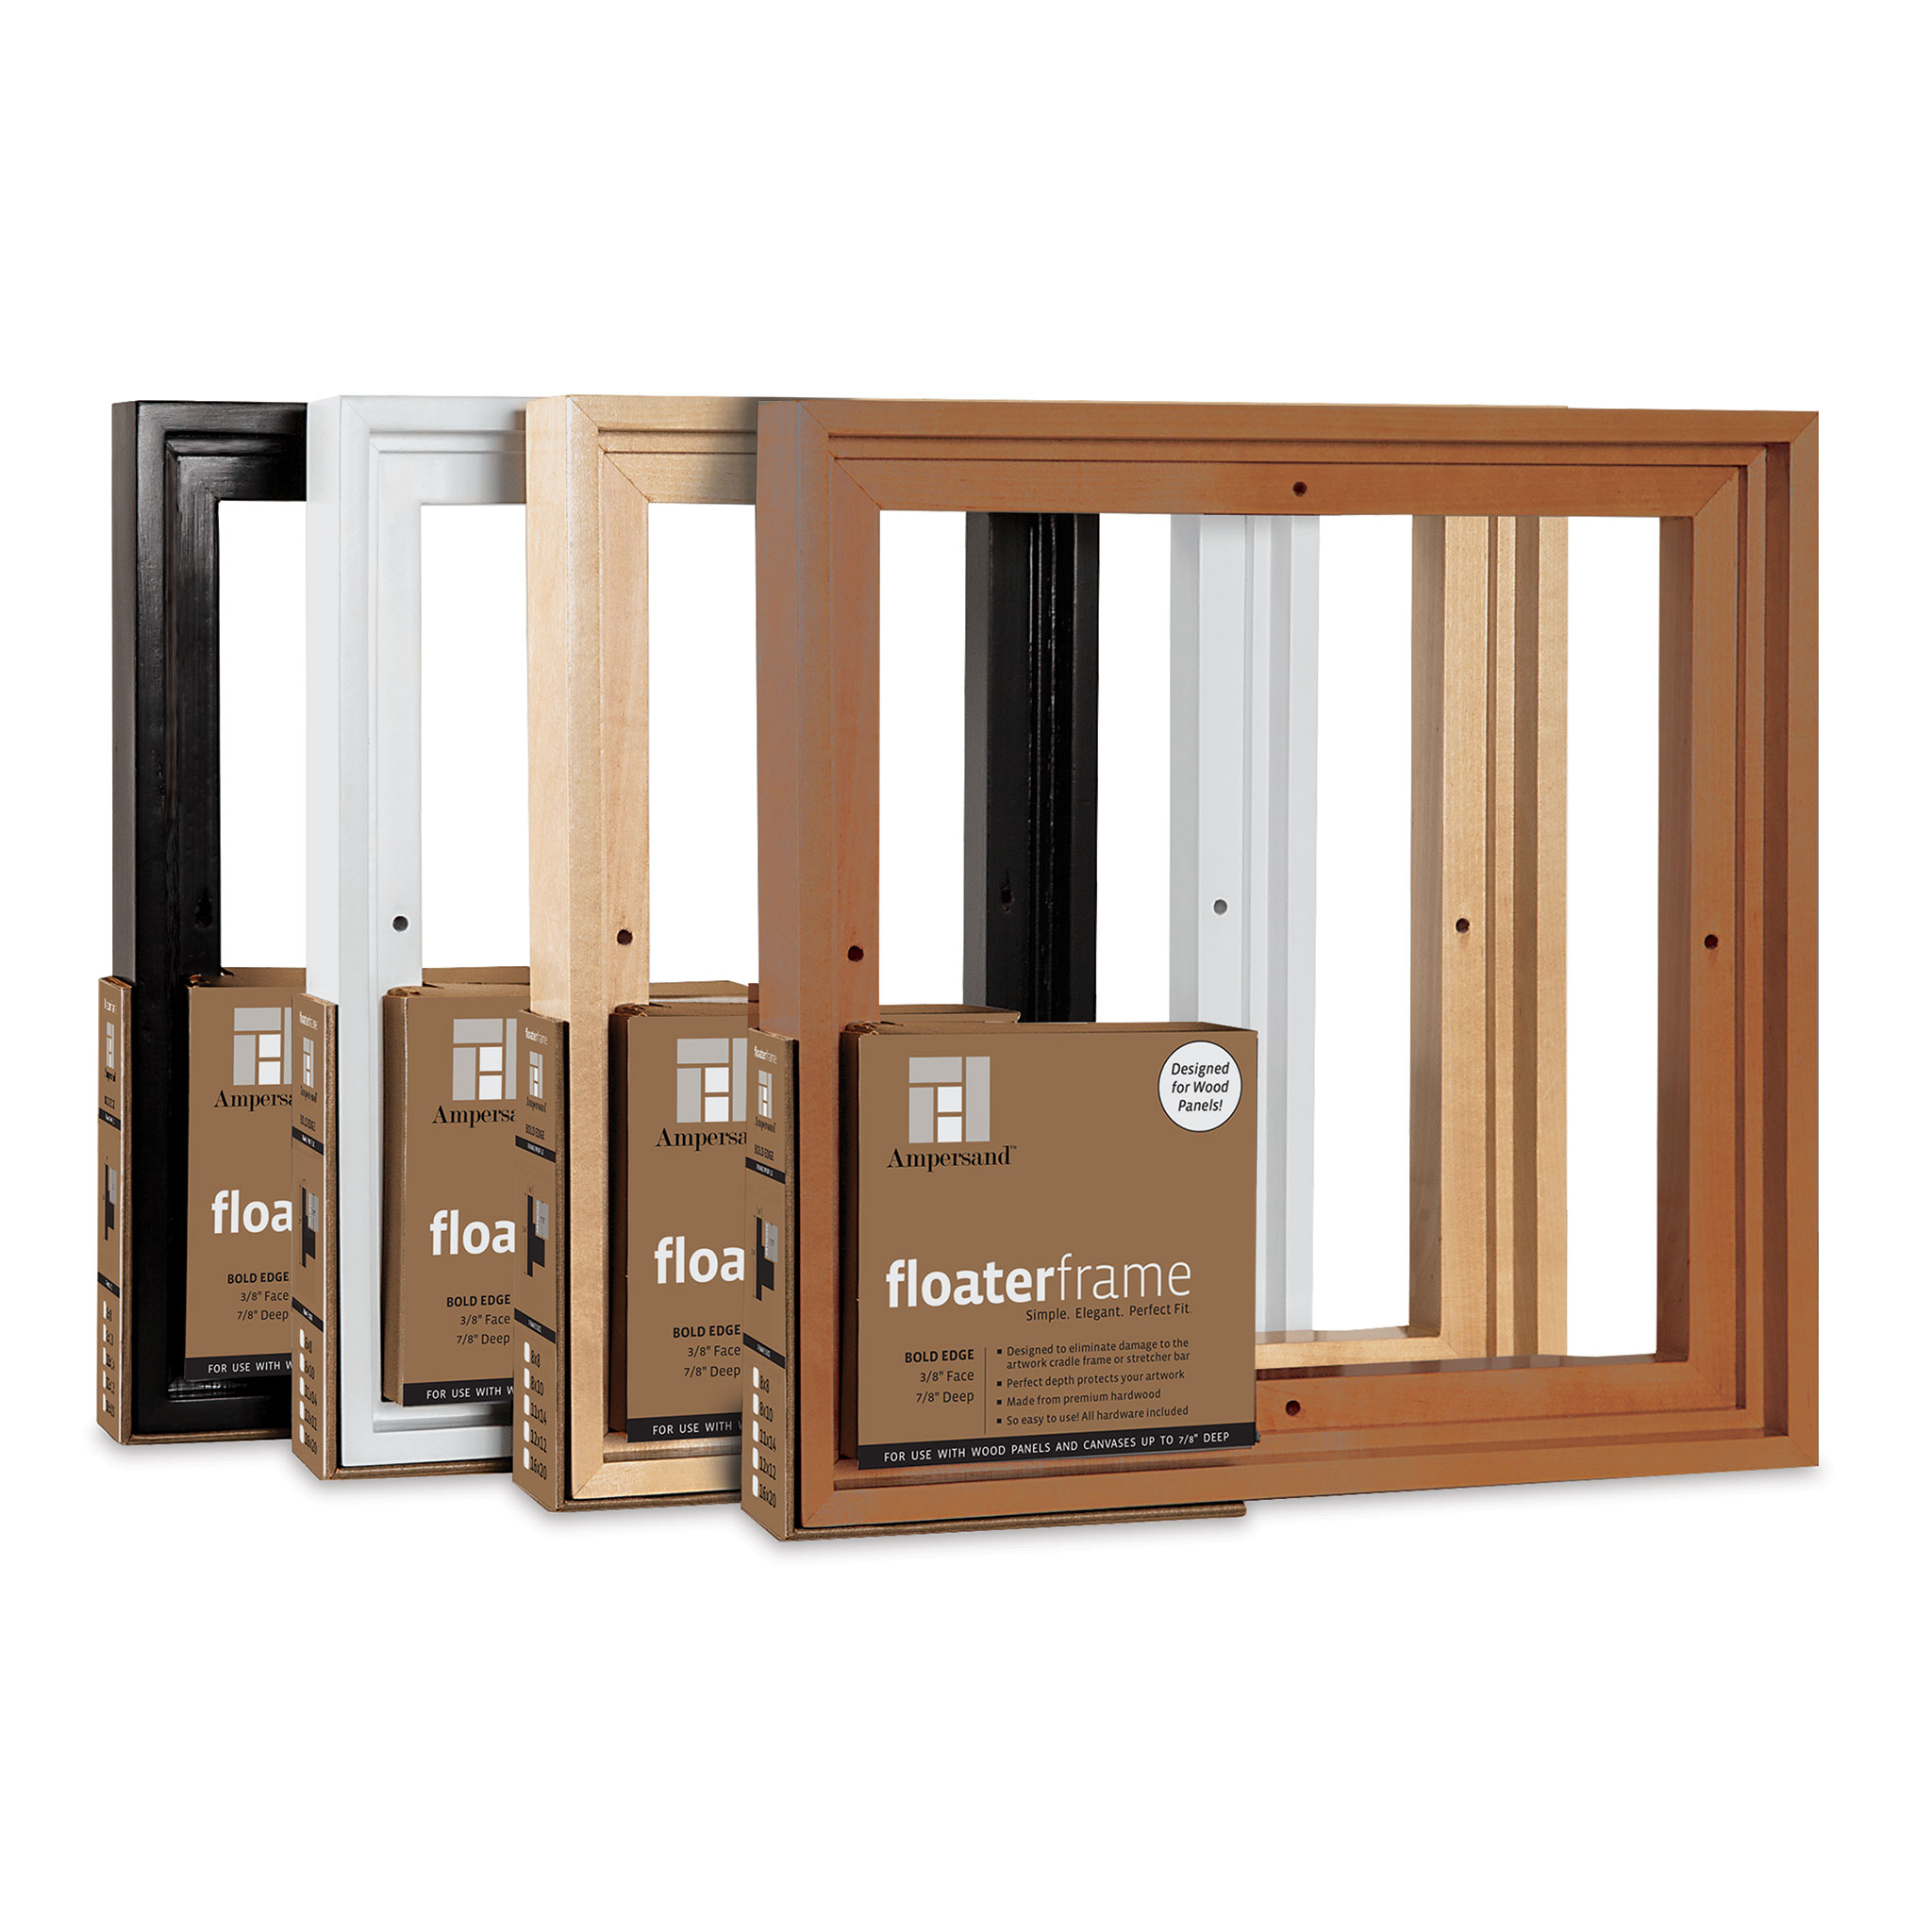 3 Inch Econo Wood Frames